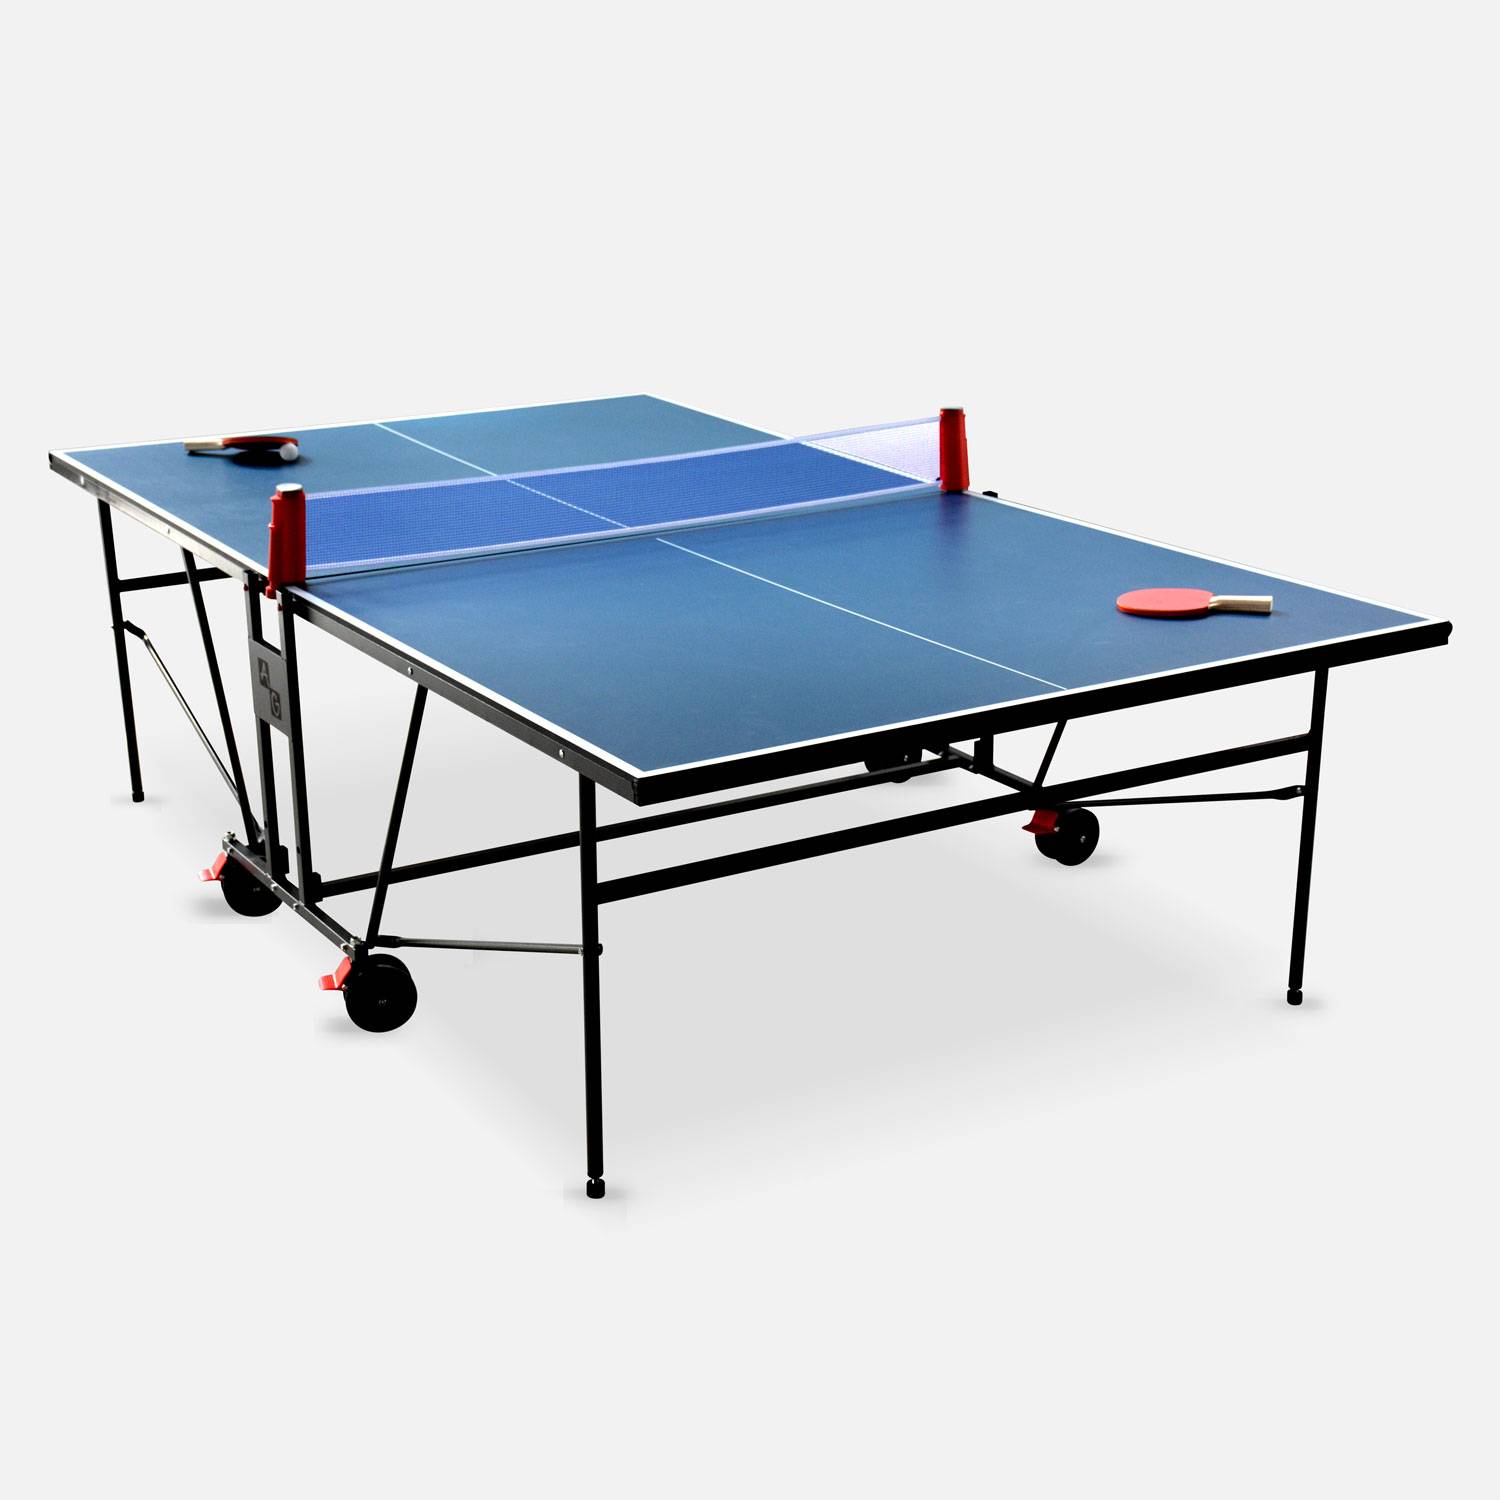 Table de ping pong INDOOR bleue avec sa housse, table pliable avec 2 raquettes et 3 balles, pour utilisation intérieure, sport tennis de table Photo2